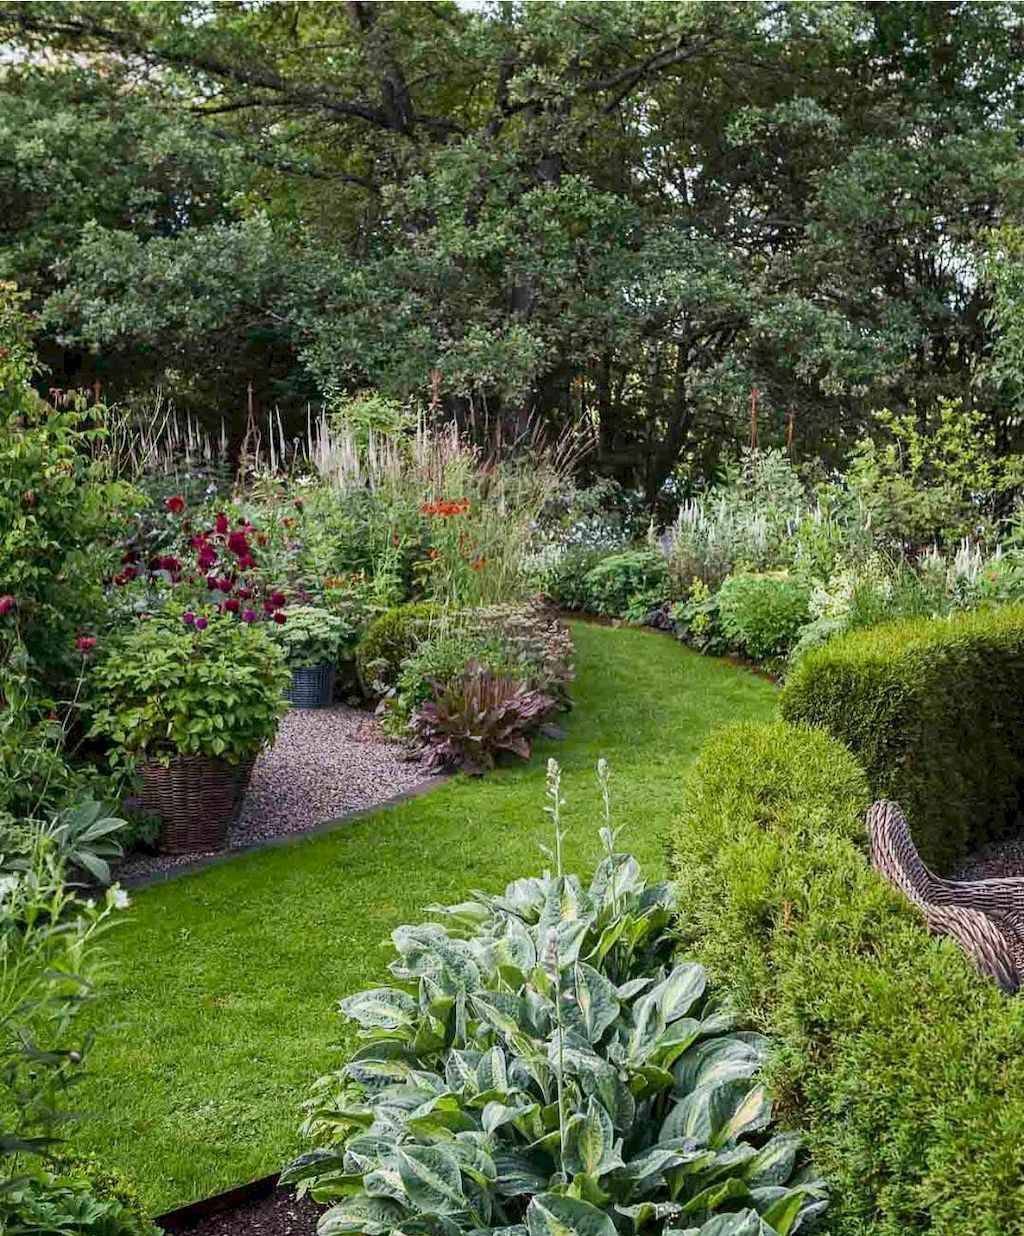 A Fantasy Backyard Garden